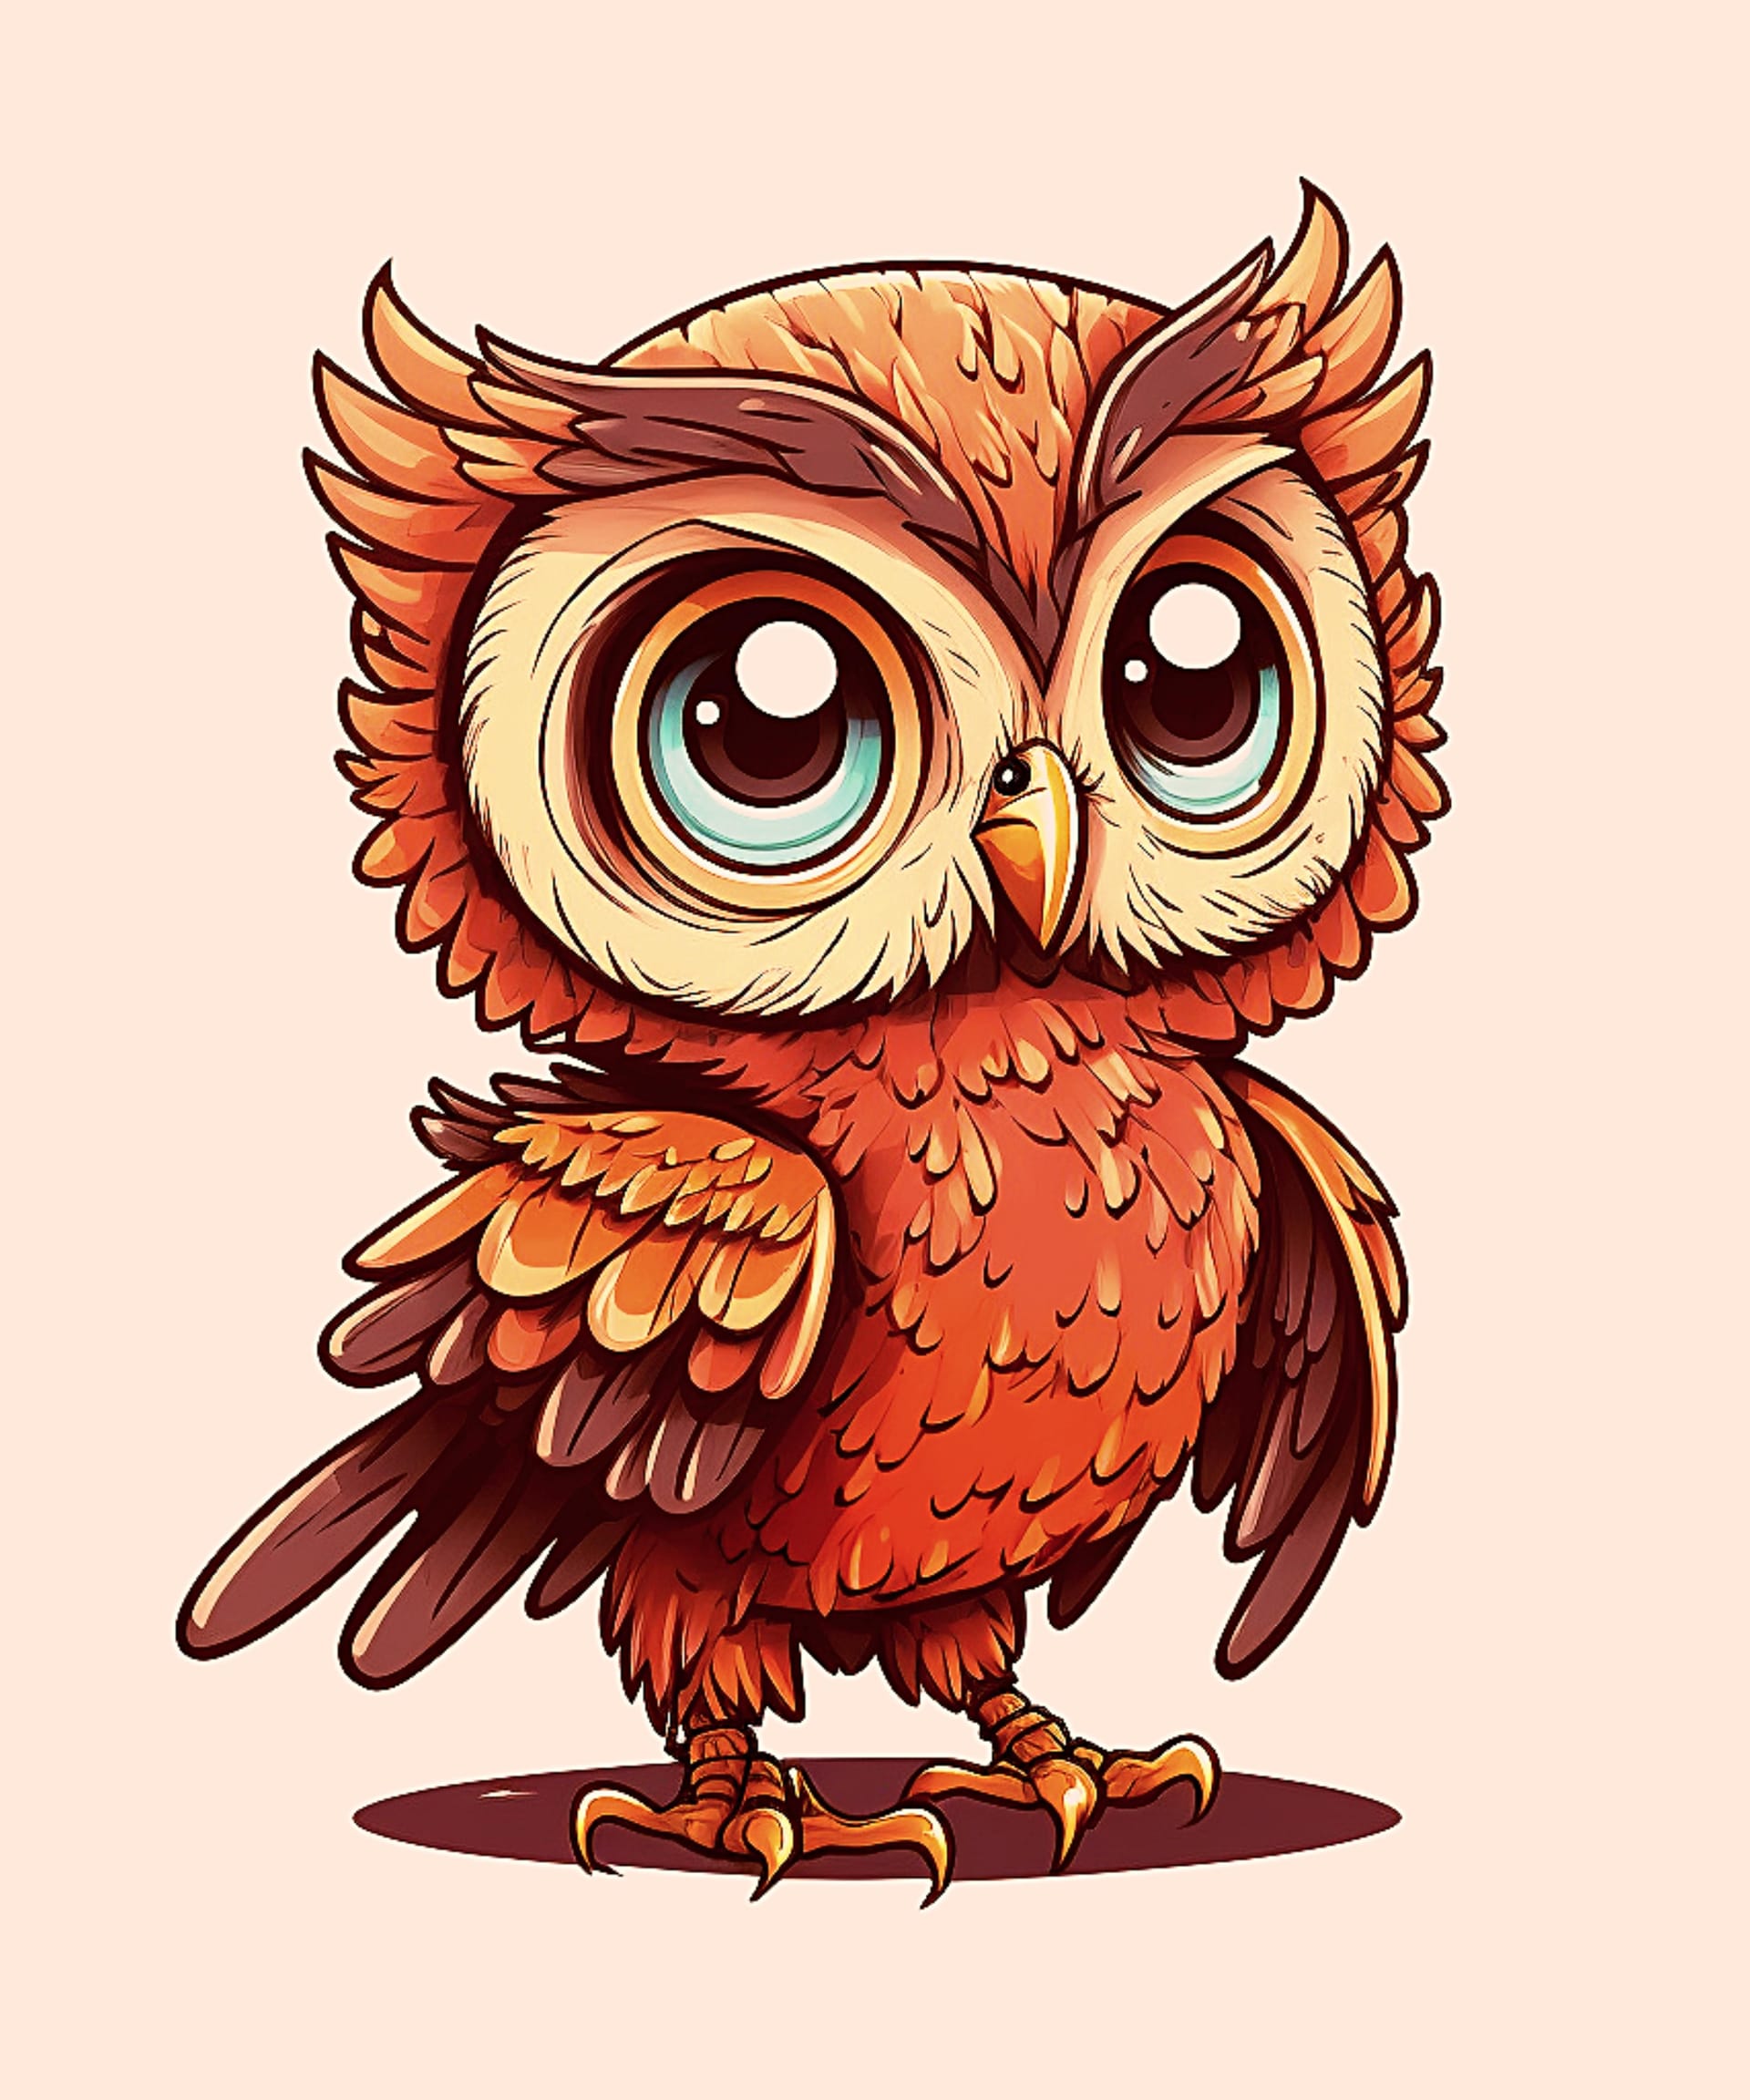 Baby owl moody image